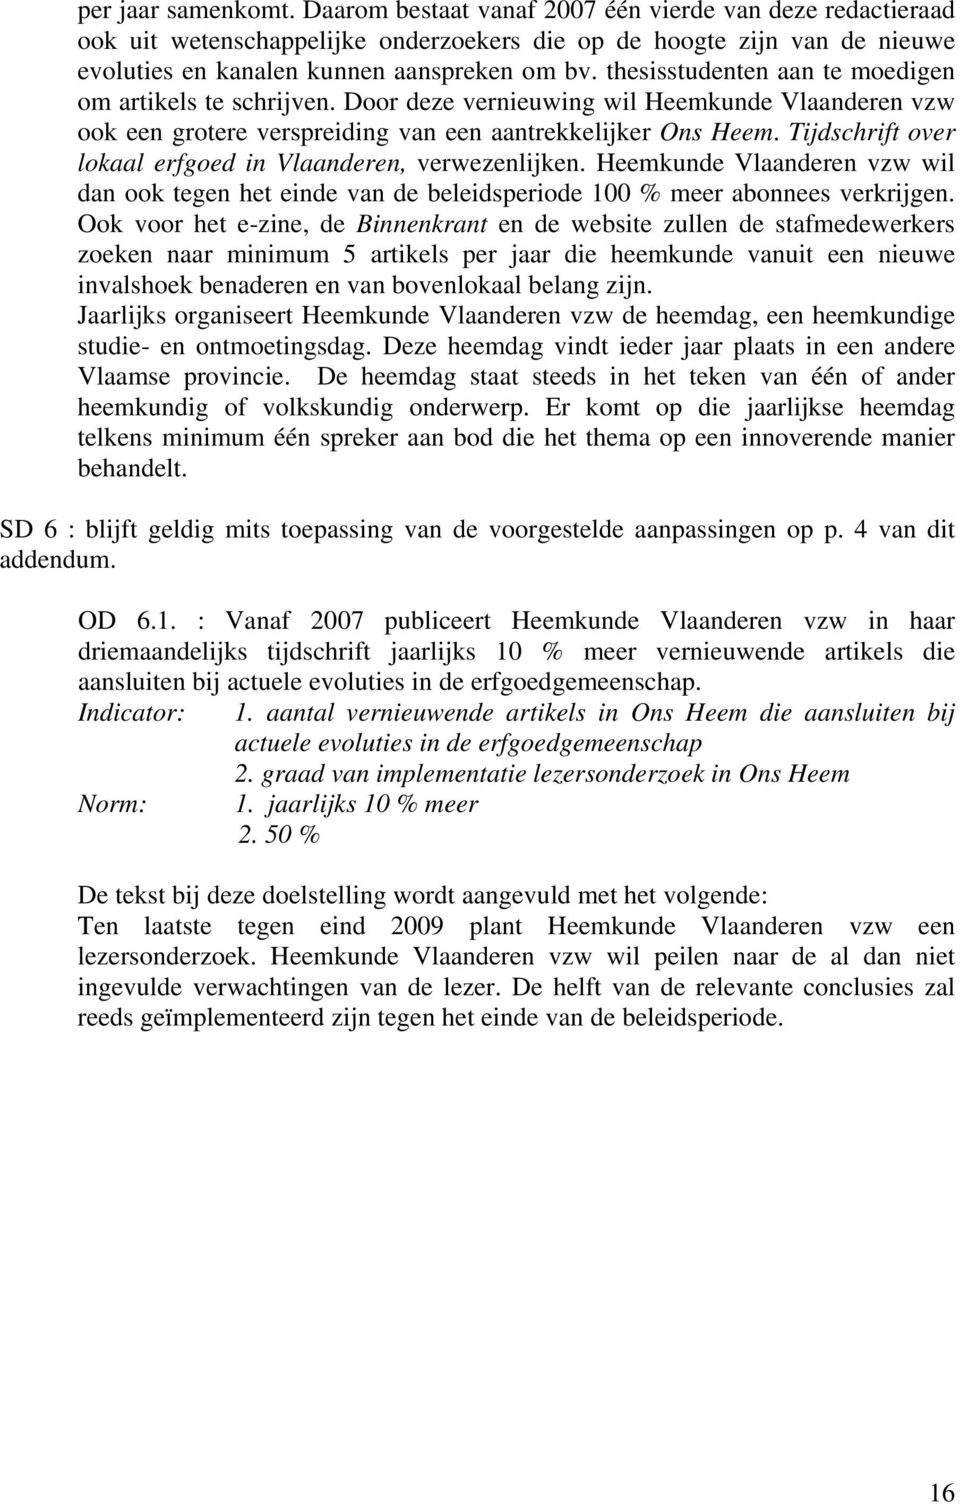 Tijdschrift over lokaal erfgoed in Vlaanderen, verwezenlijken. Heemkunde Vlaanderen vzw wil dan ook tegen het einde van de beleidsperiode 100 % meer abonnees verkrijgen.